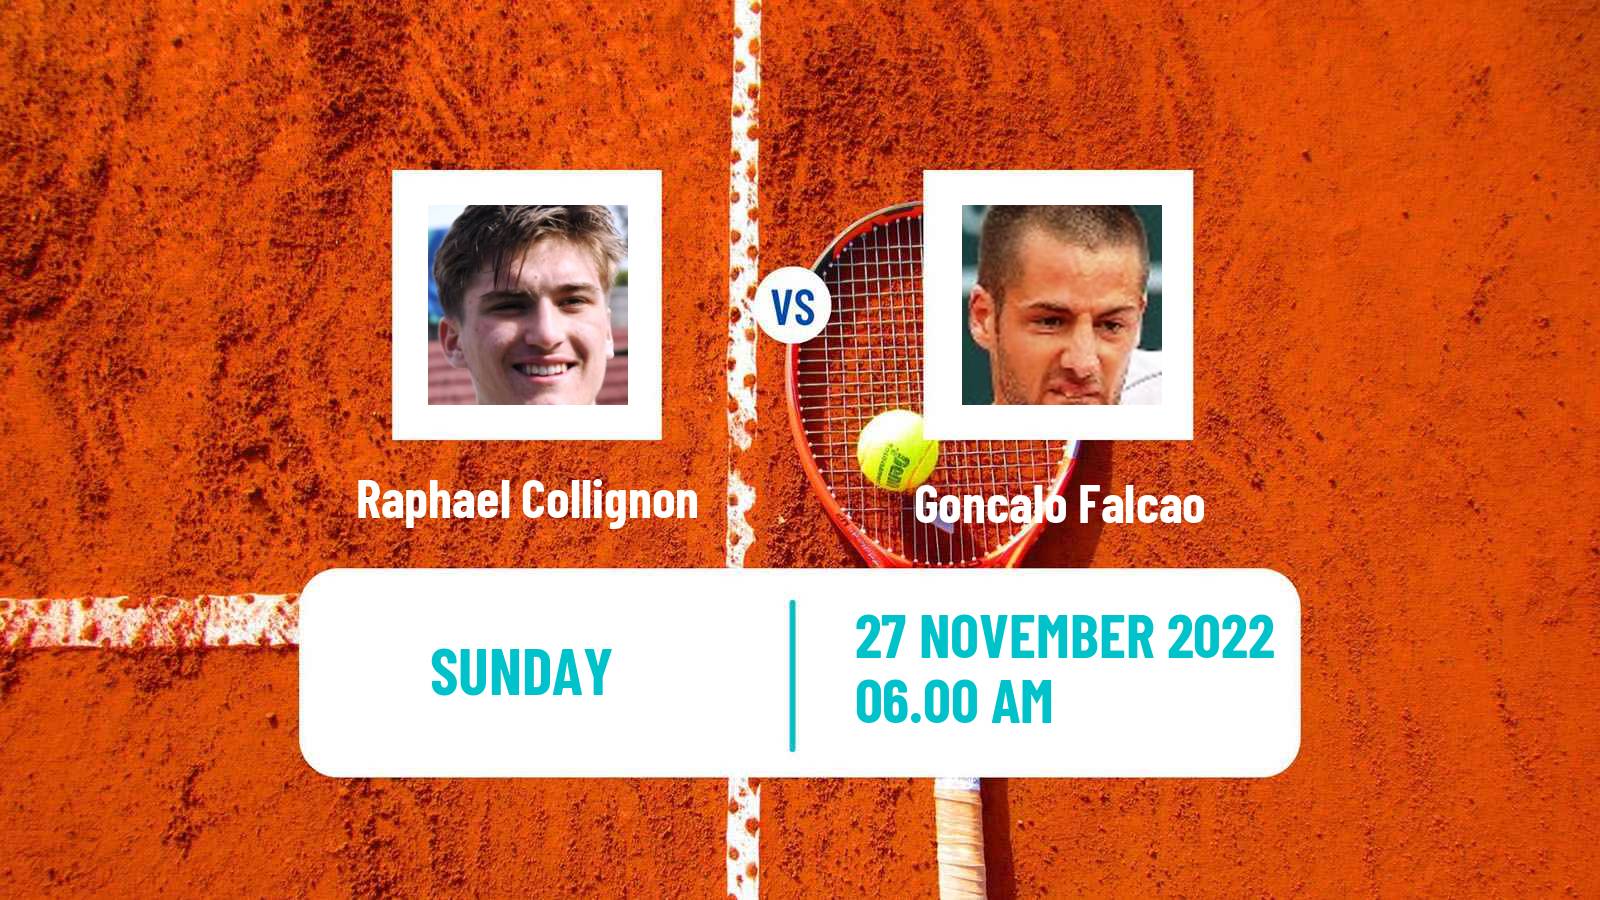 Tennis ATP Challenger Raphael Collignon - Goncalo Falcao